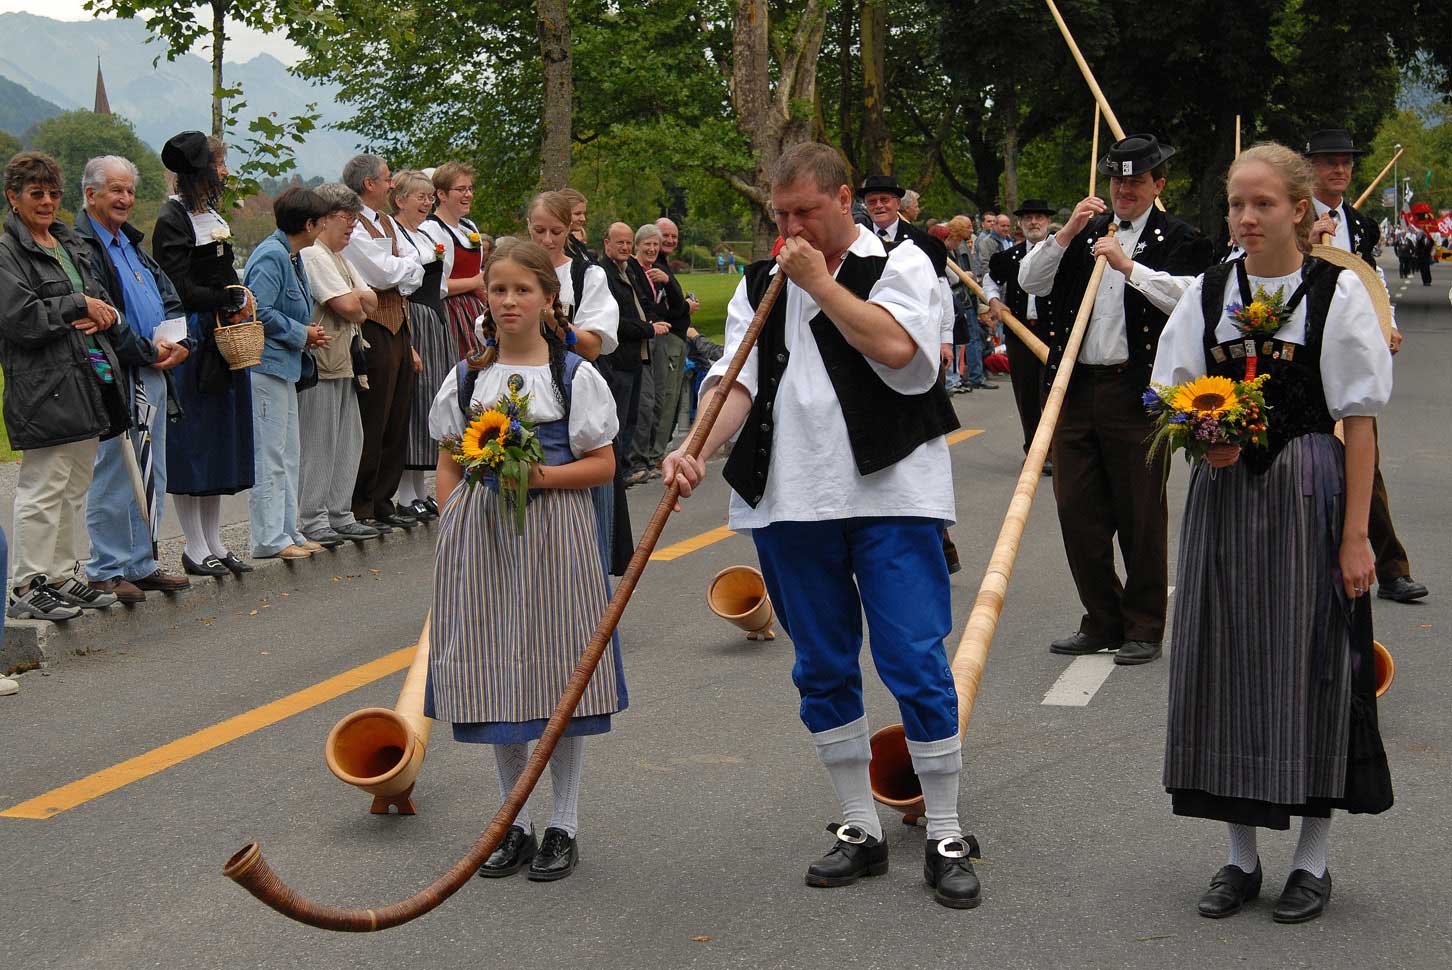 Alphorn players during the procession at the 2006 Unspunnen festival © Steiner/Verein Schweizerisches Trachten- und Alphirtenfest Unspunnen